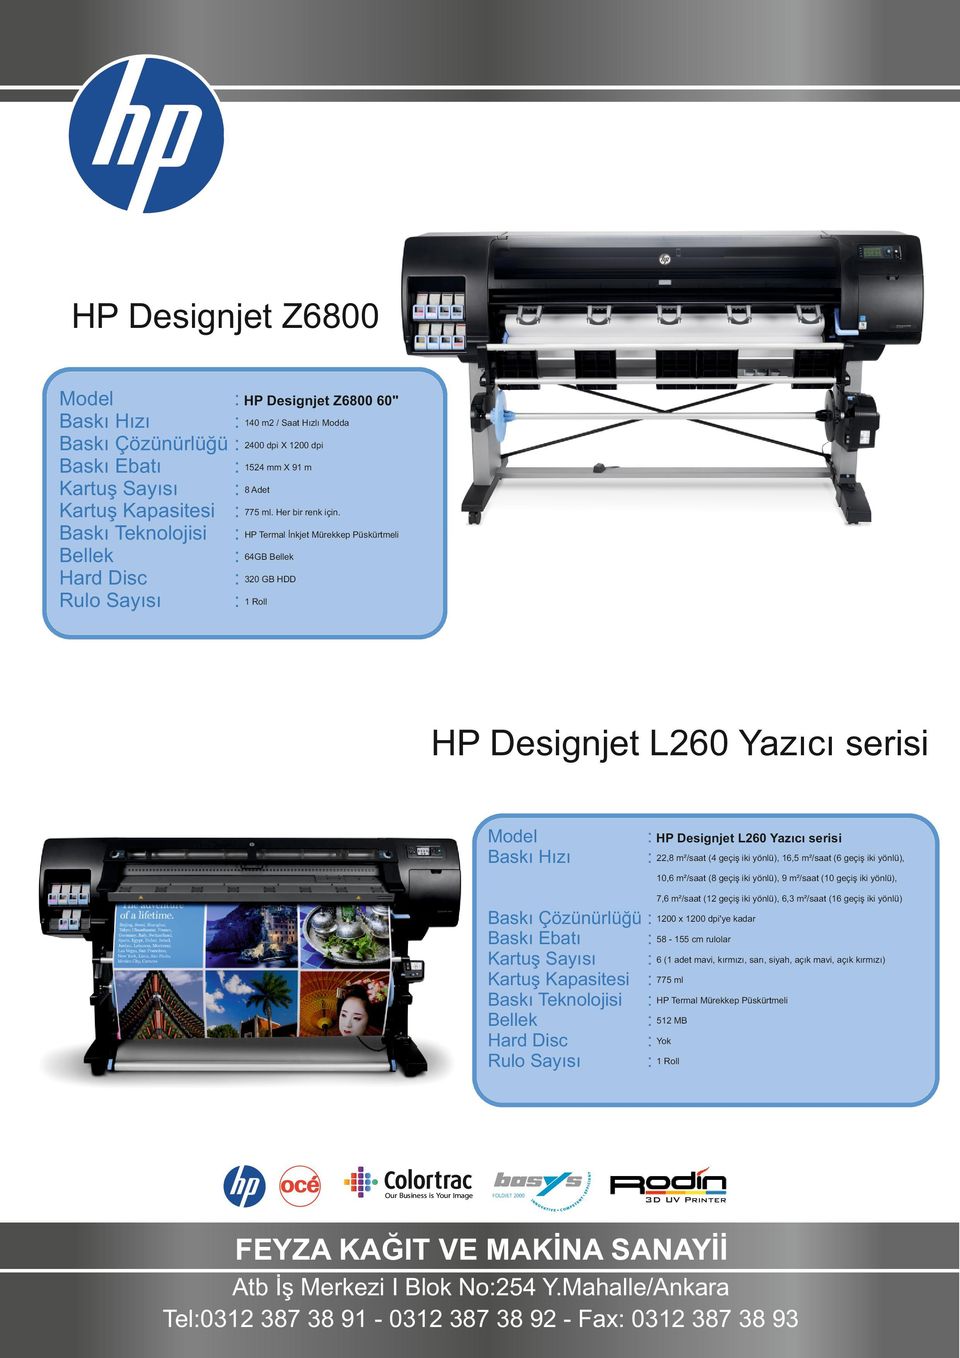 : HP Termal İnkjet Mürekkep Püskürtmeli : 64GB : 320 GB HDD HP Designjet L260 Yazıcı serisi : HP Designjet L260 Yazıcı serisi : 22,8 m²/saat (4 geçiş iki yönlü), 16,5